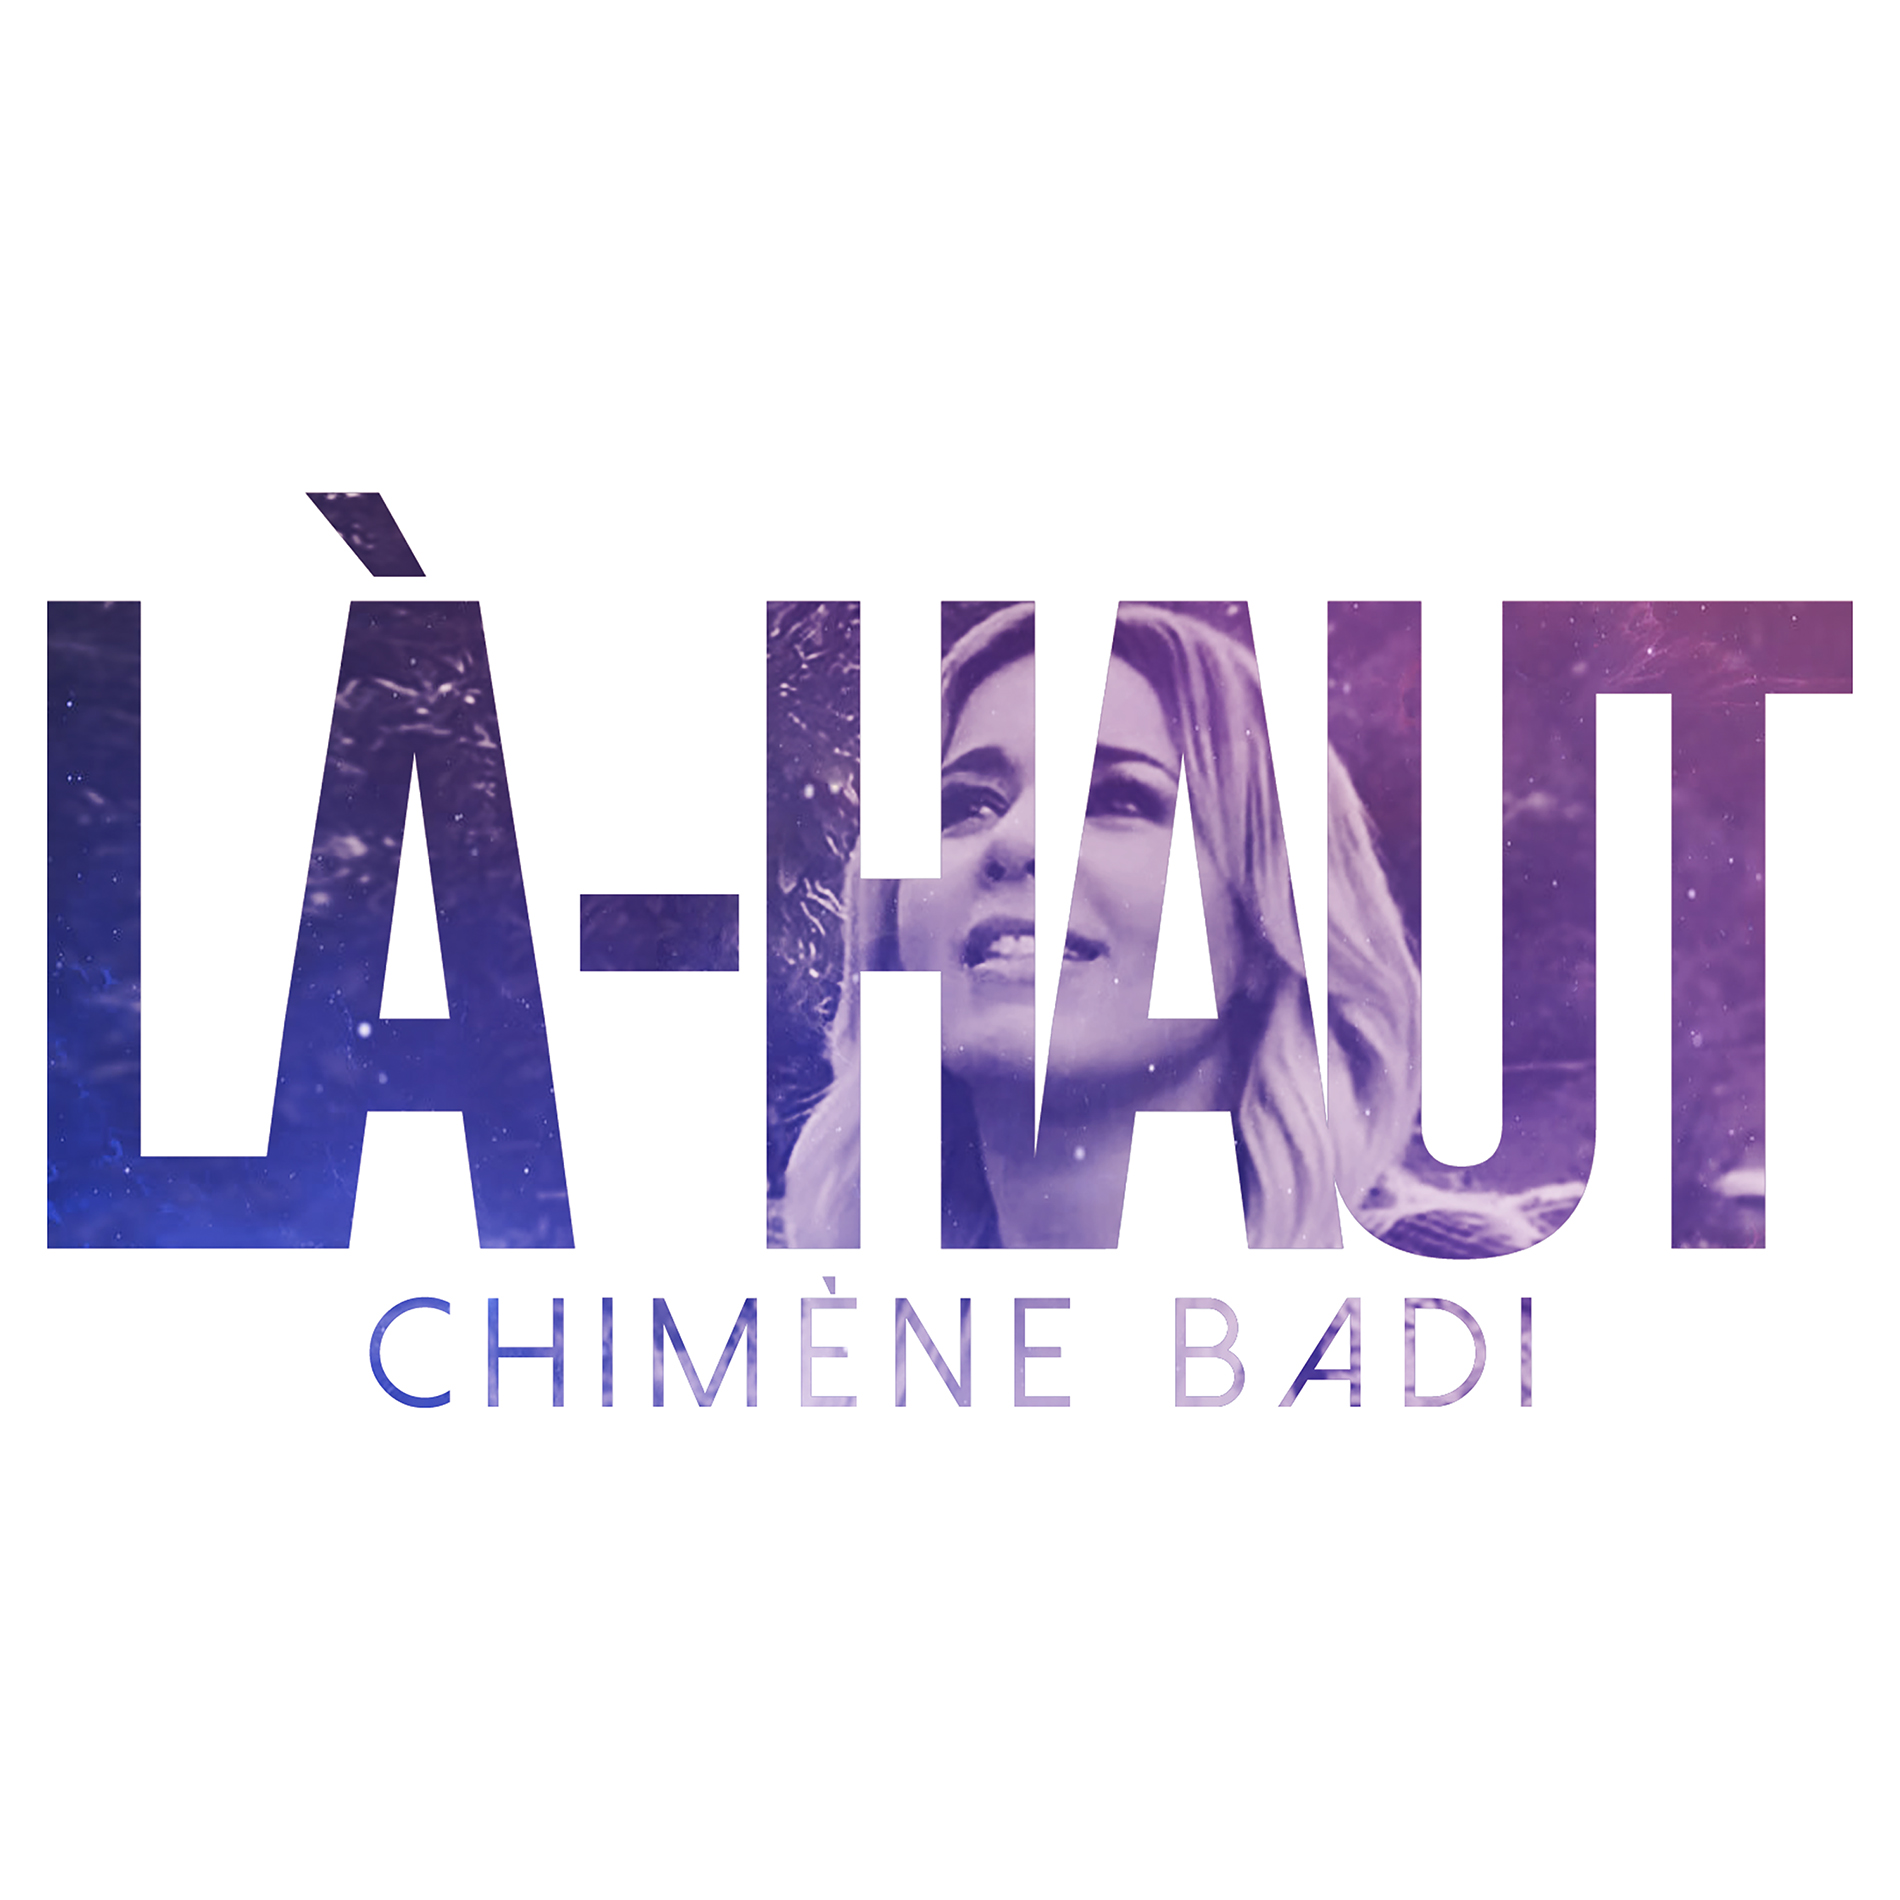 cover album Chimène Badi 2019. Album Là-haut